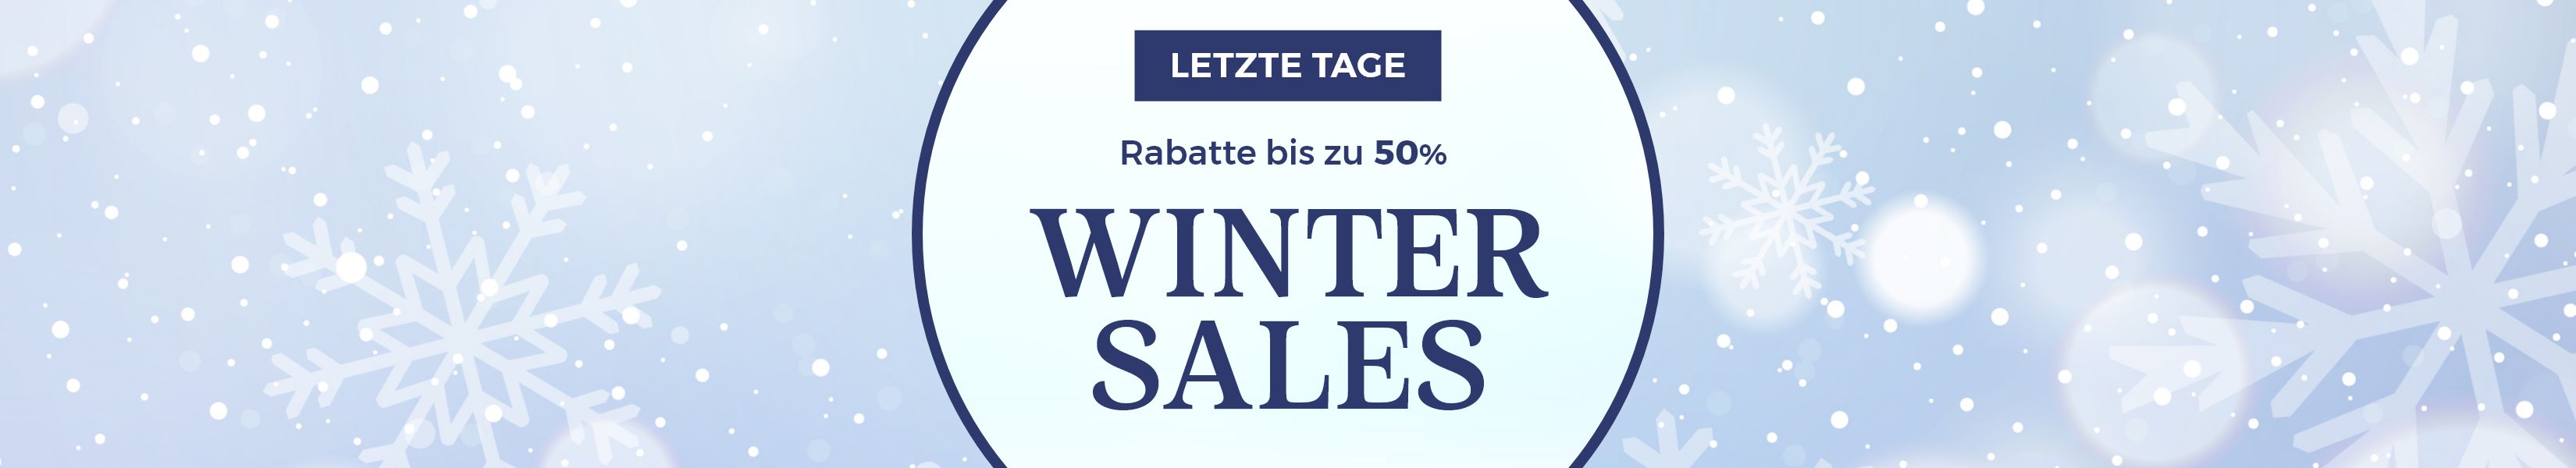 WINTER SALES RABATTE BIS ZU -50% ENDET AM 31.01